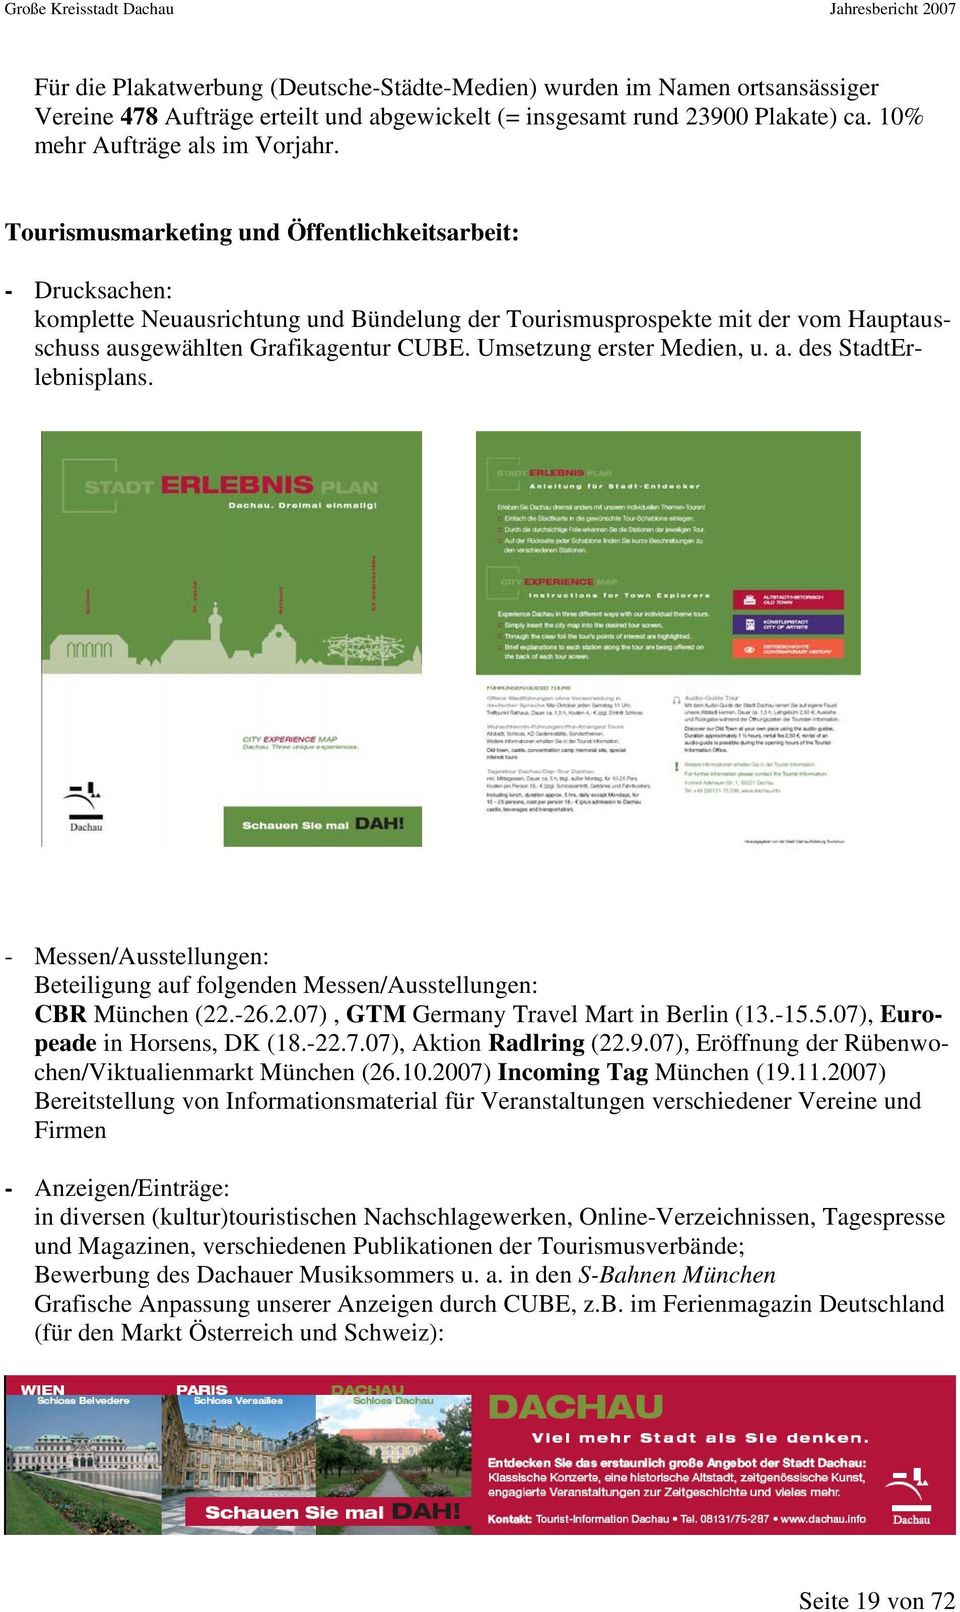 Umsetzung erster Medien, u. a. des StadtErlebnisplans. - Messen/Ausstellungen: Beteiligung auf folgenden Messen/Ausstellungen: CBR München (22.-26.2.07), GTM Germany Travel Mart in Berlin (13.-15.